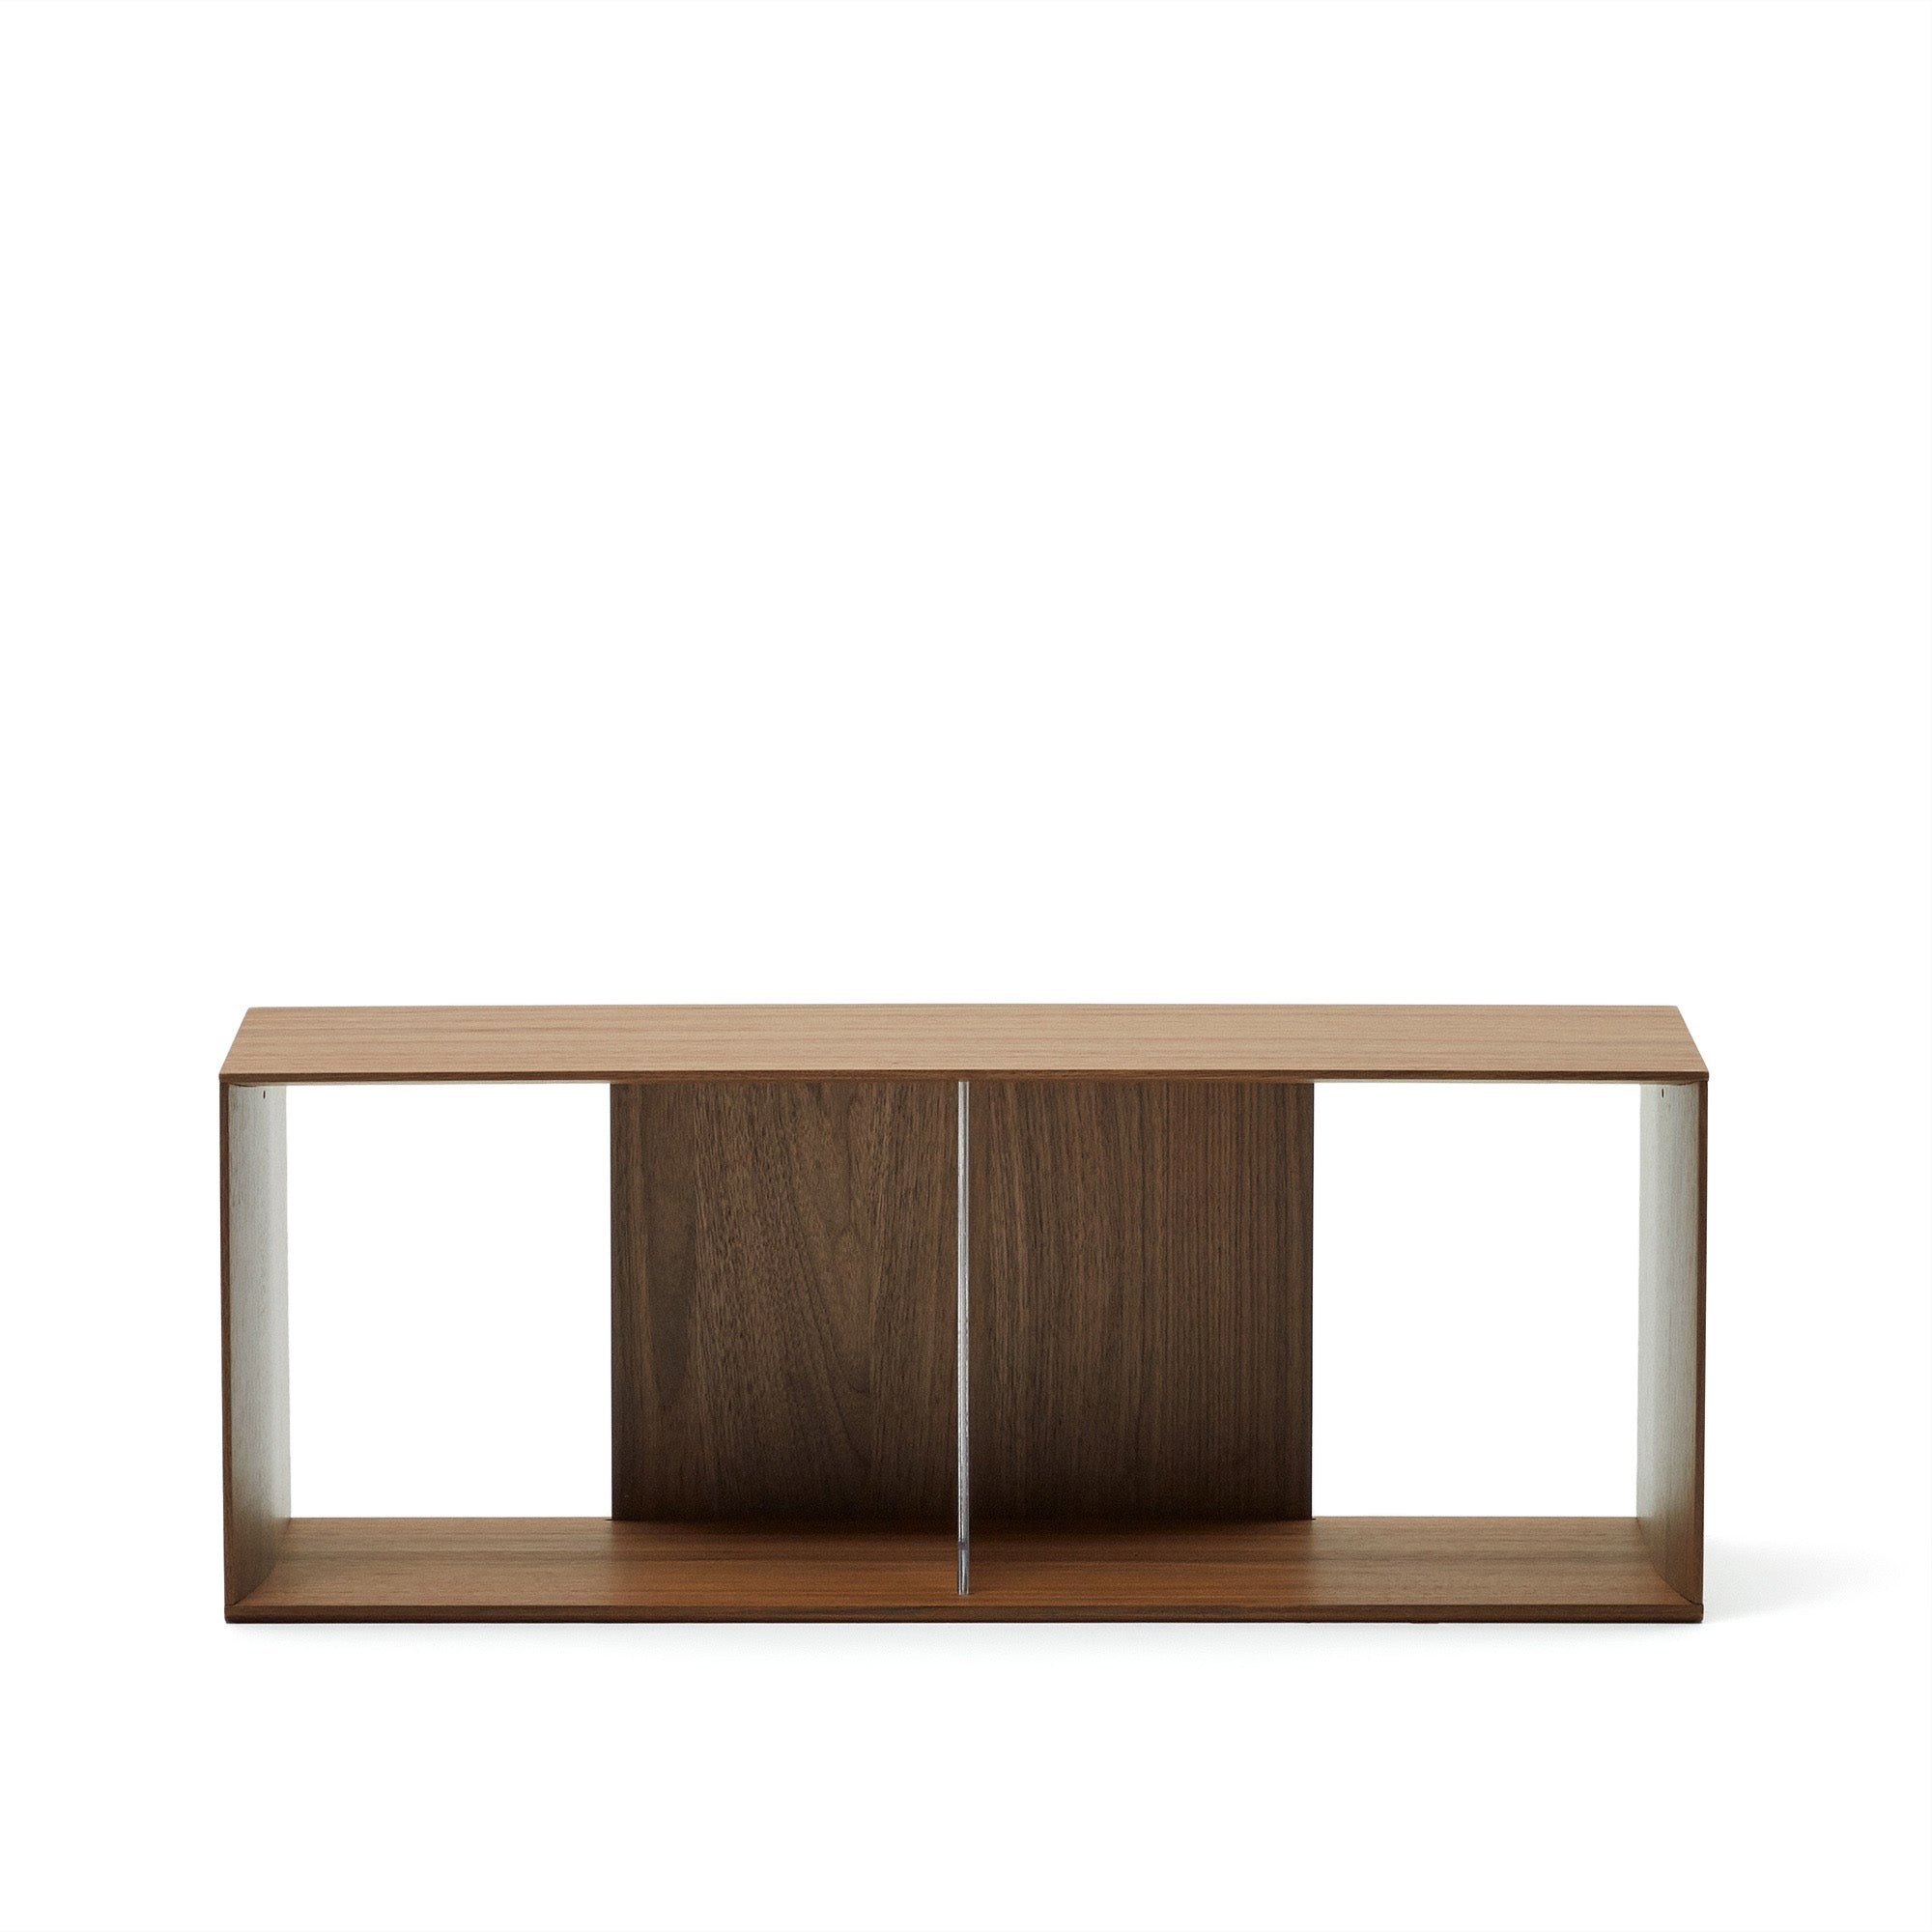 Litto large shelf module in walnut veneer, 101 x 38 cm